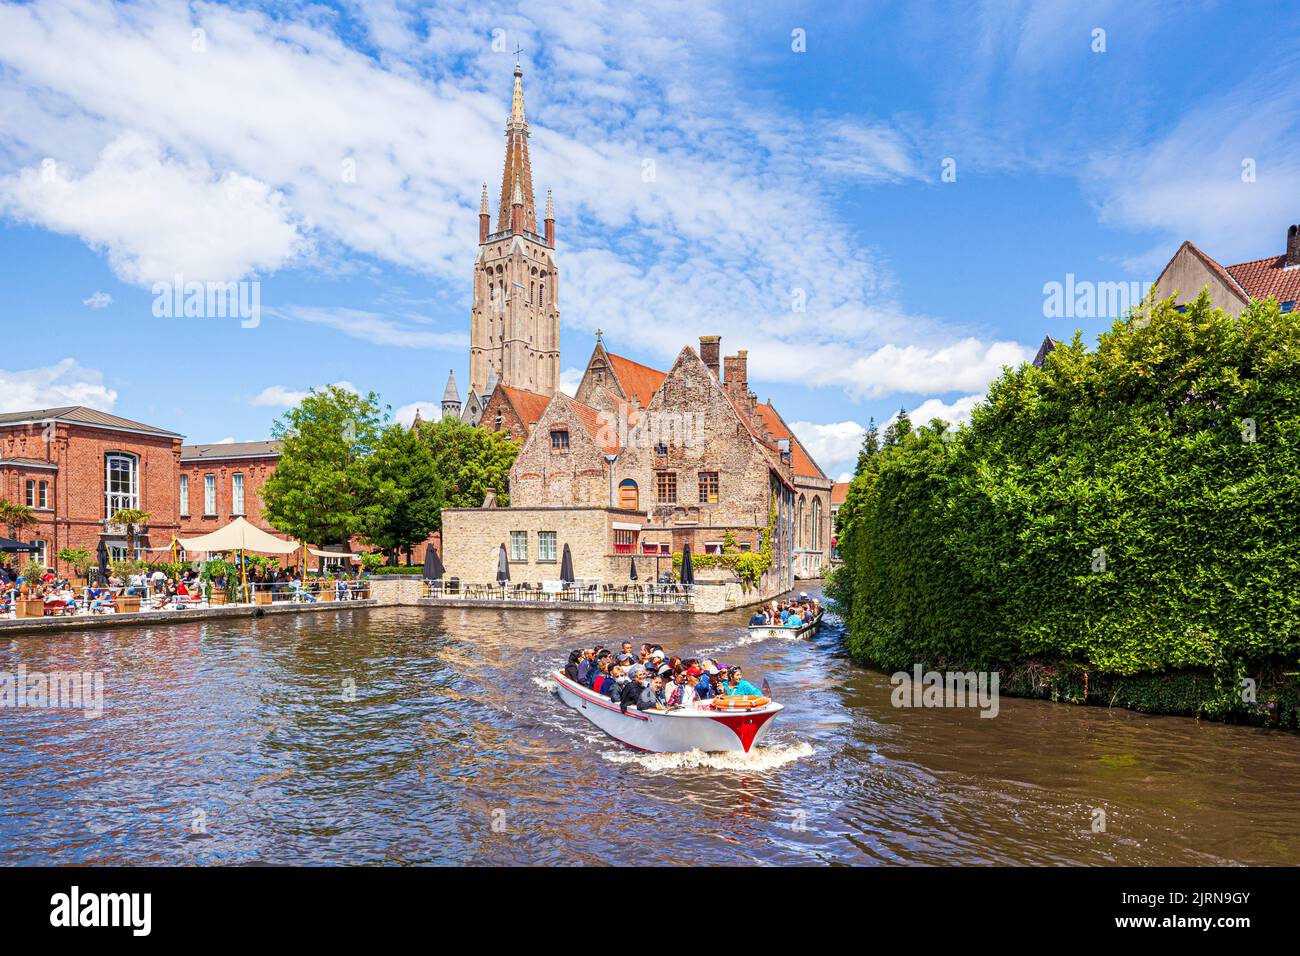 Der Turm der Kirche unserer Lieben Frau (Onze-Lieve-Vrouwekerk) mit Blick auf St. Johns Hospital (Sint-Janshospitaal) und Touristen genießen eine Bootsfahrt auf dem Stockfoto